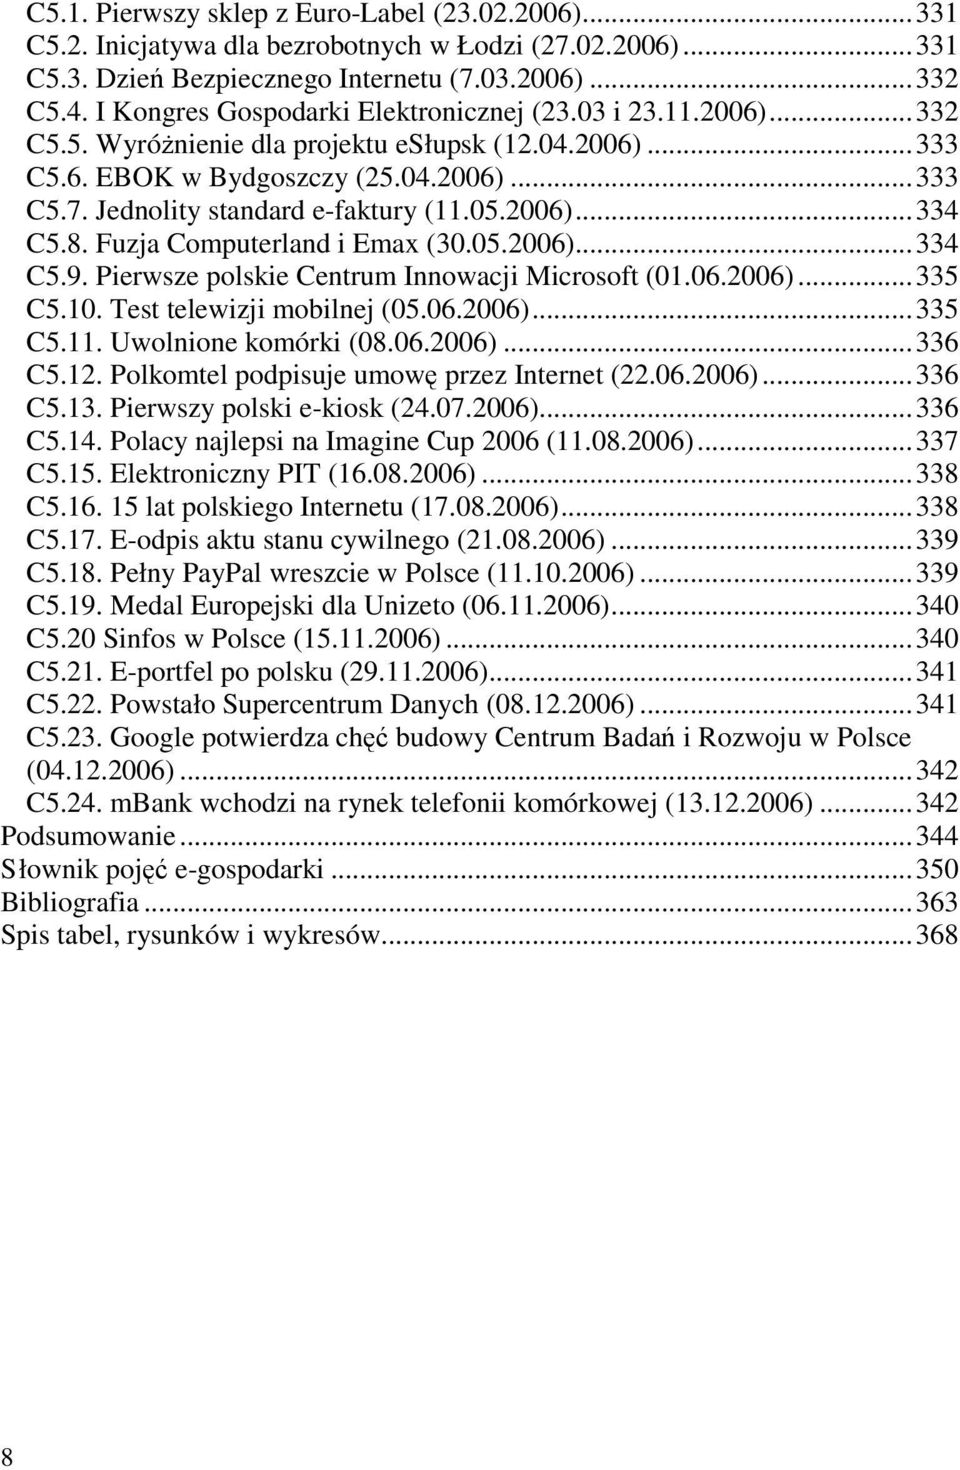 Jednolity standard e-faktury (11.05.2006)...334 C5.8. Fuzja Computerland i Emax (30.05.2006)...334 C5.9. Pierwsze polskie Centrum Innowacji Microsoft (01.06.2006)...335 C5.10.